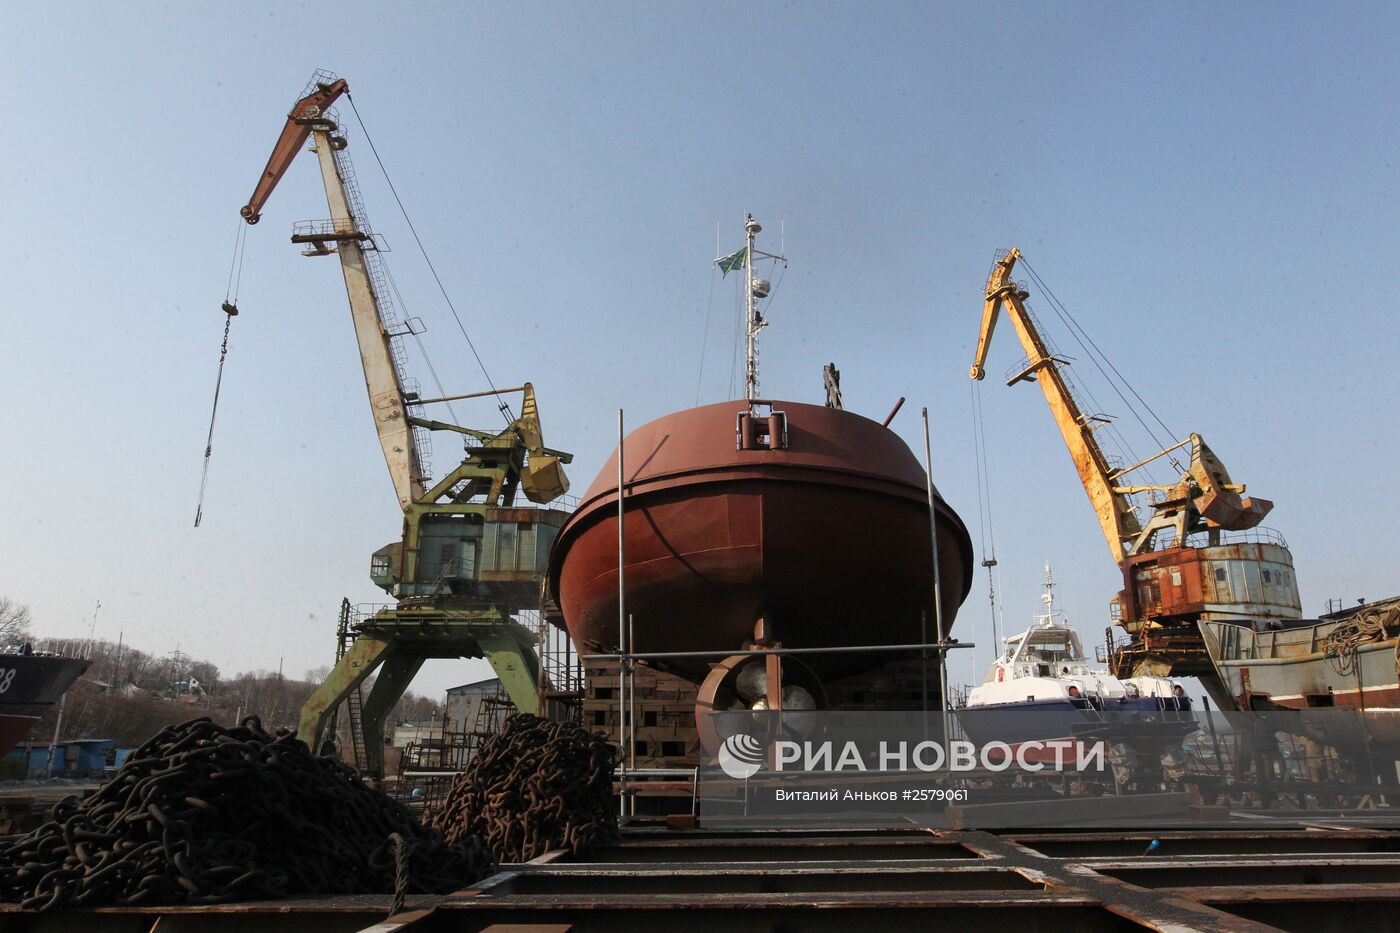 Ливадийский ремонтно-судостроительный завод в Приморском крае